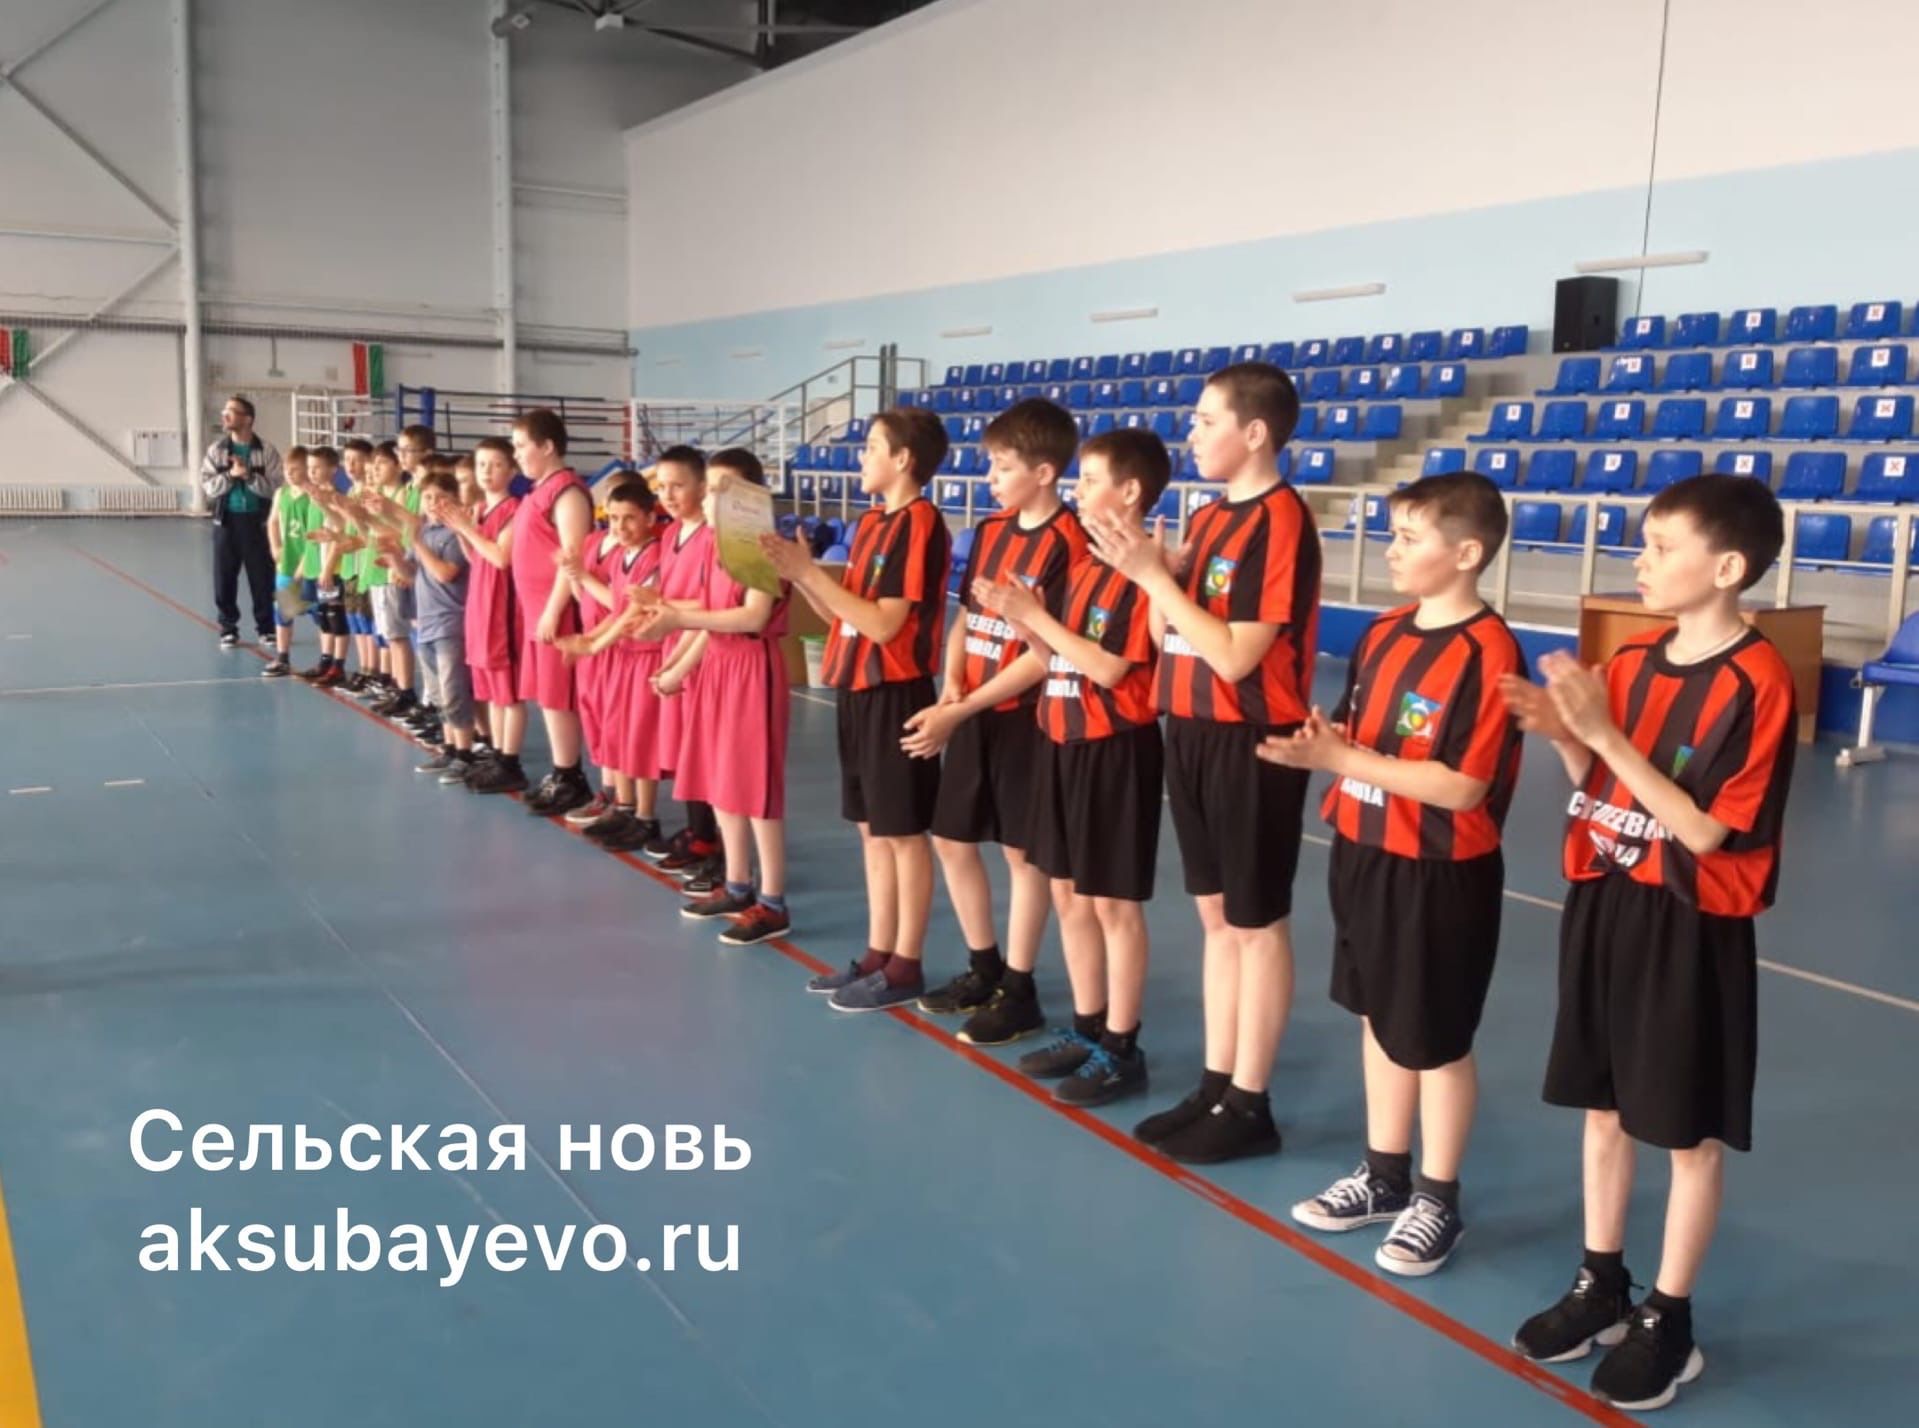 В Аксубаеве завершилось Первенство спортивной школы по волейболу